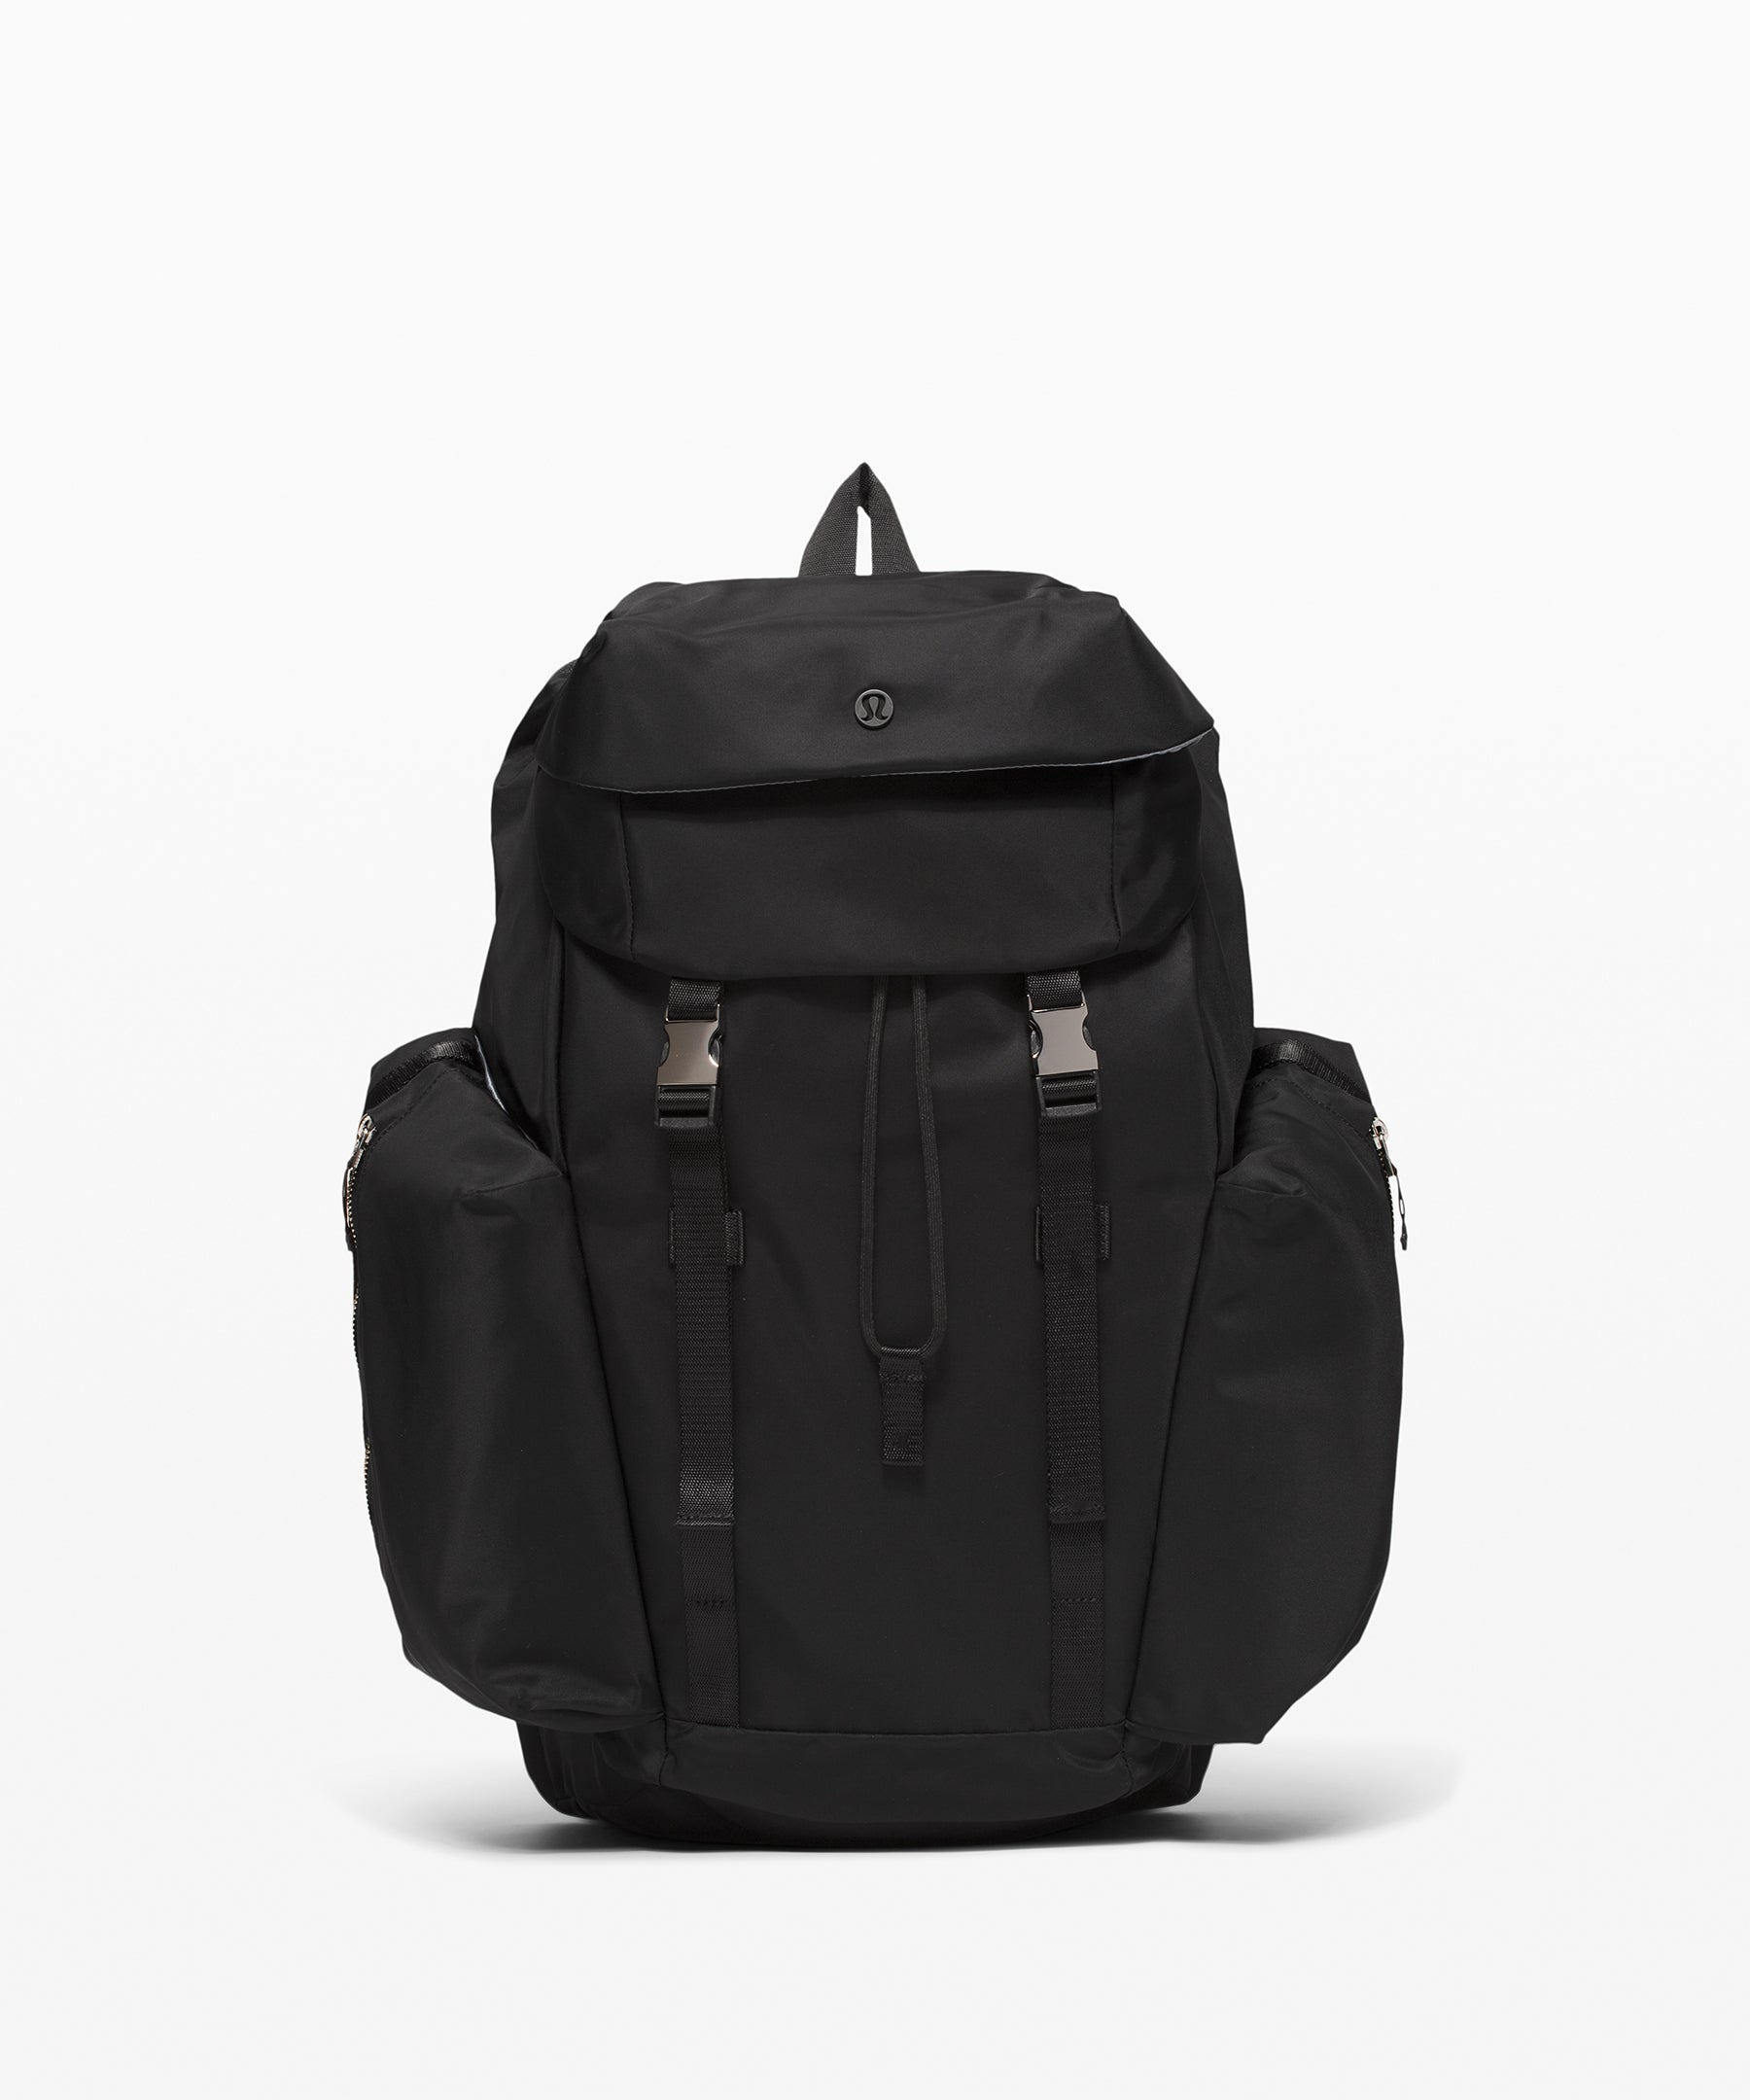 Lululemon Urban Nomad Backpack